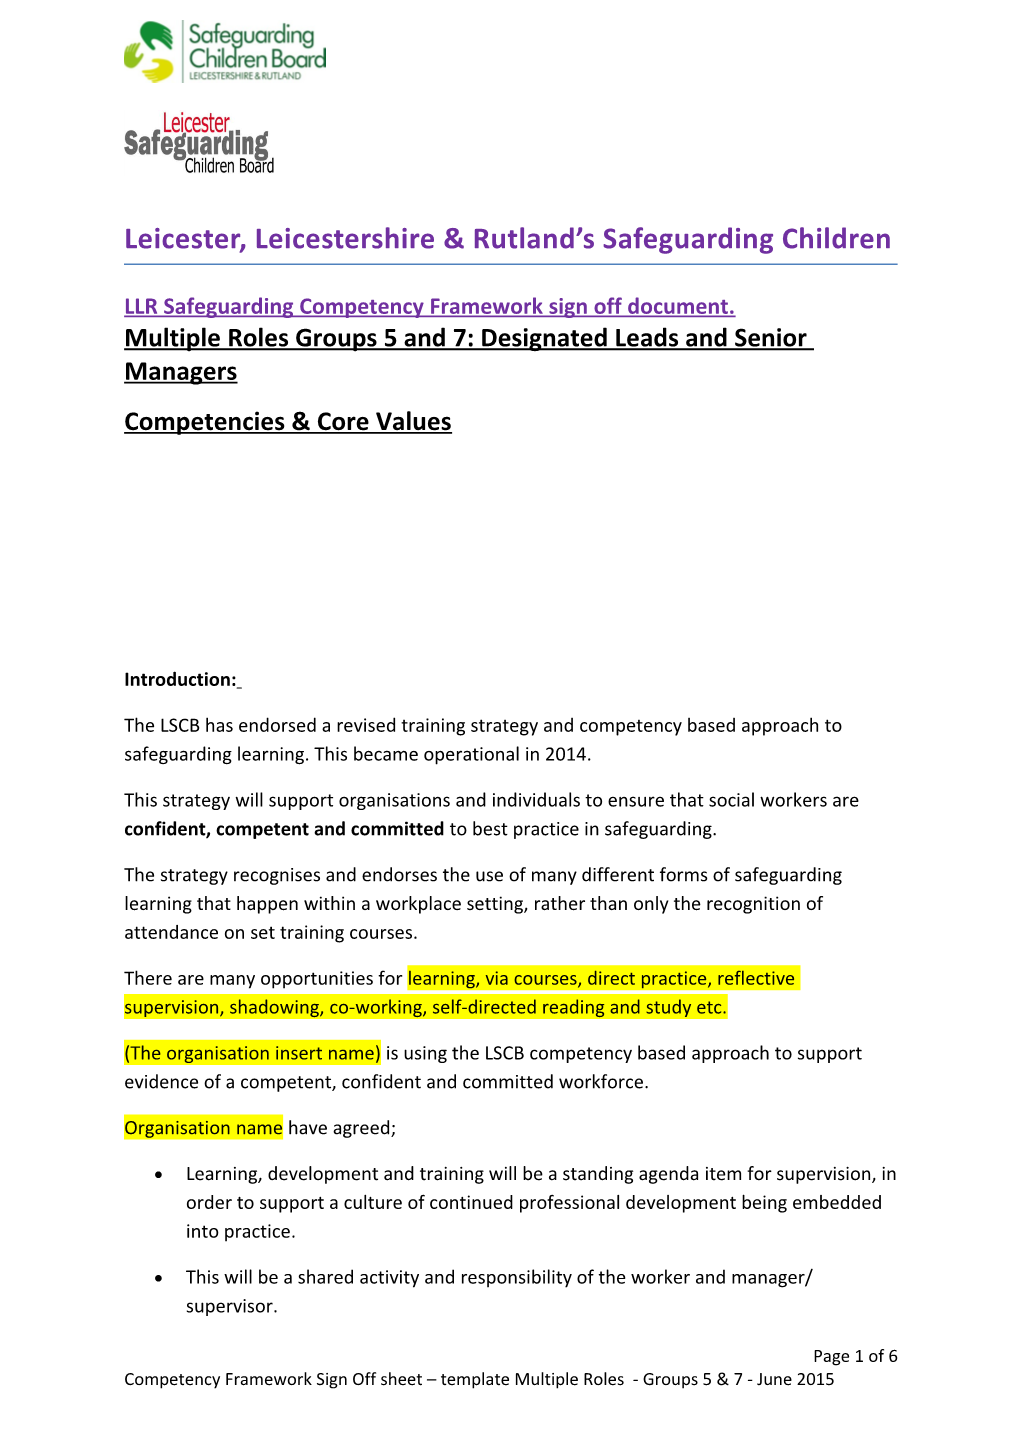 LLR Safeguarding Competency Framework Sign Off Document s1